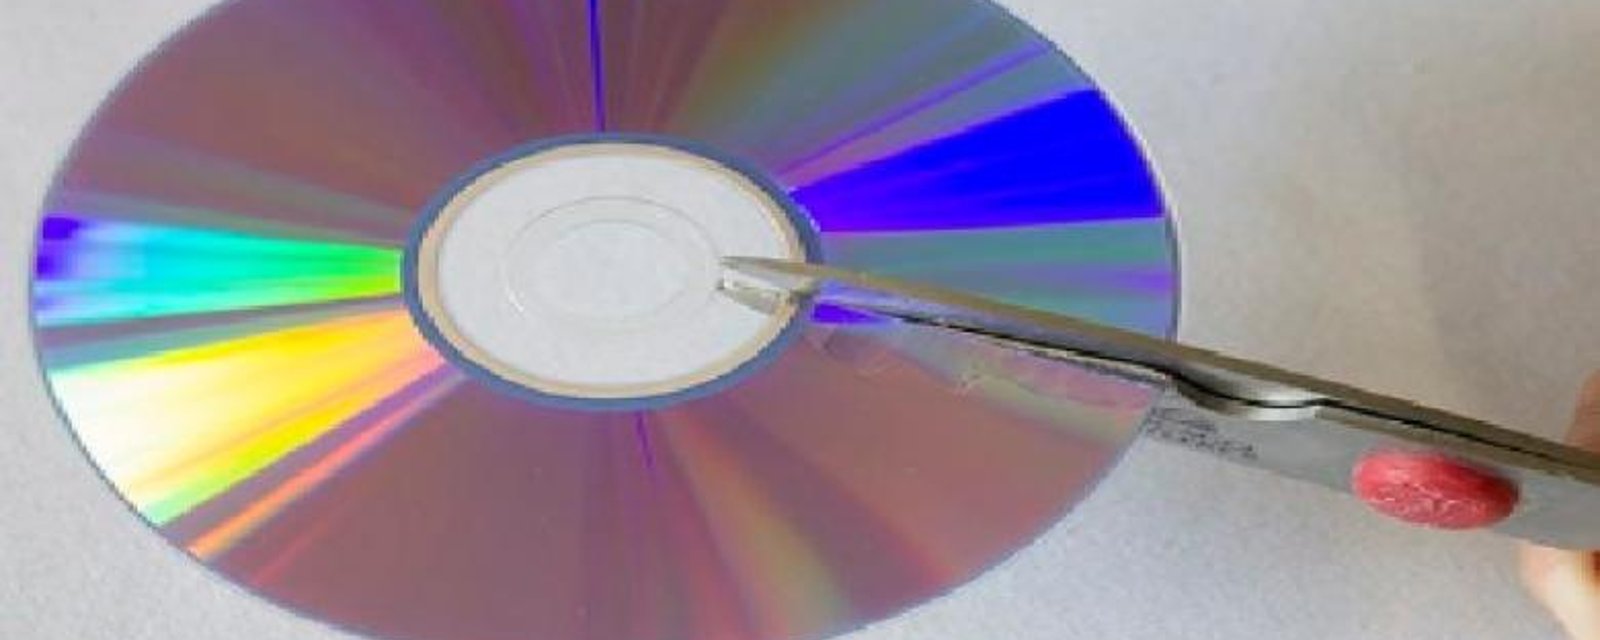 Vous cherchez une façon de rénover votre cuisine pour pas cher? Ce qu'ils ont fait avec de vieux CD est franchement épatant!